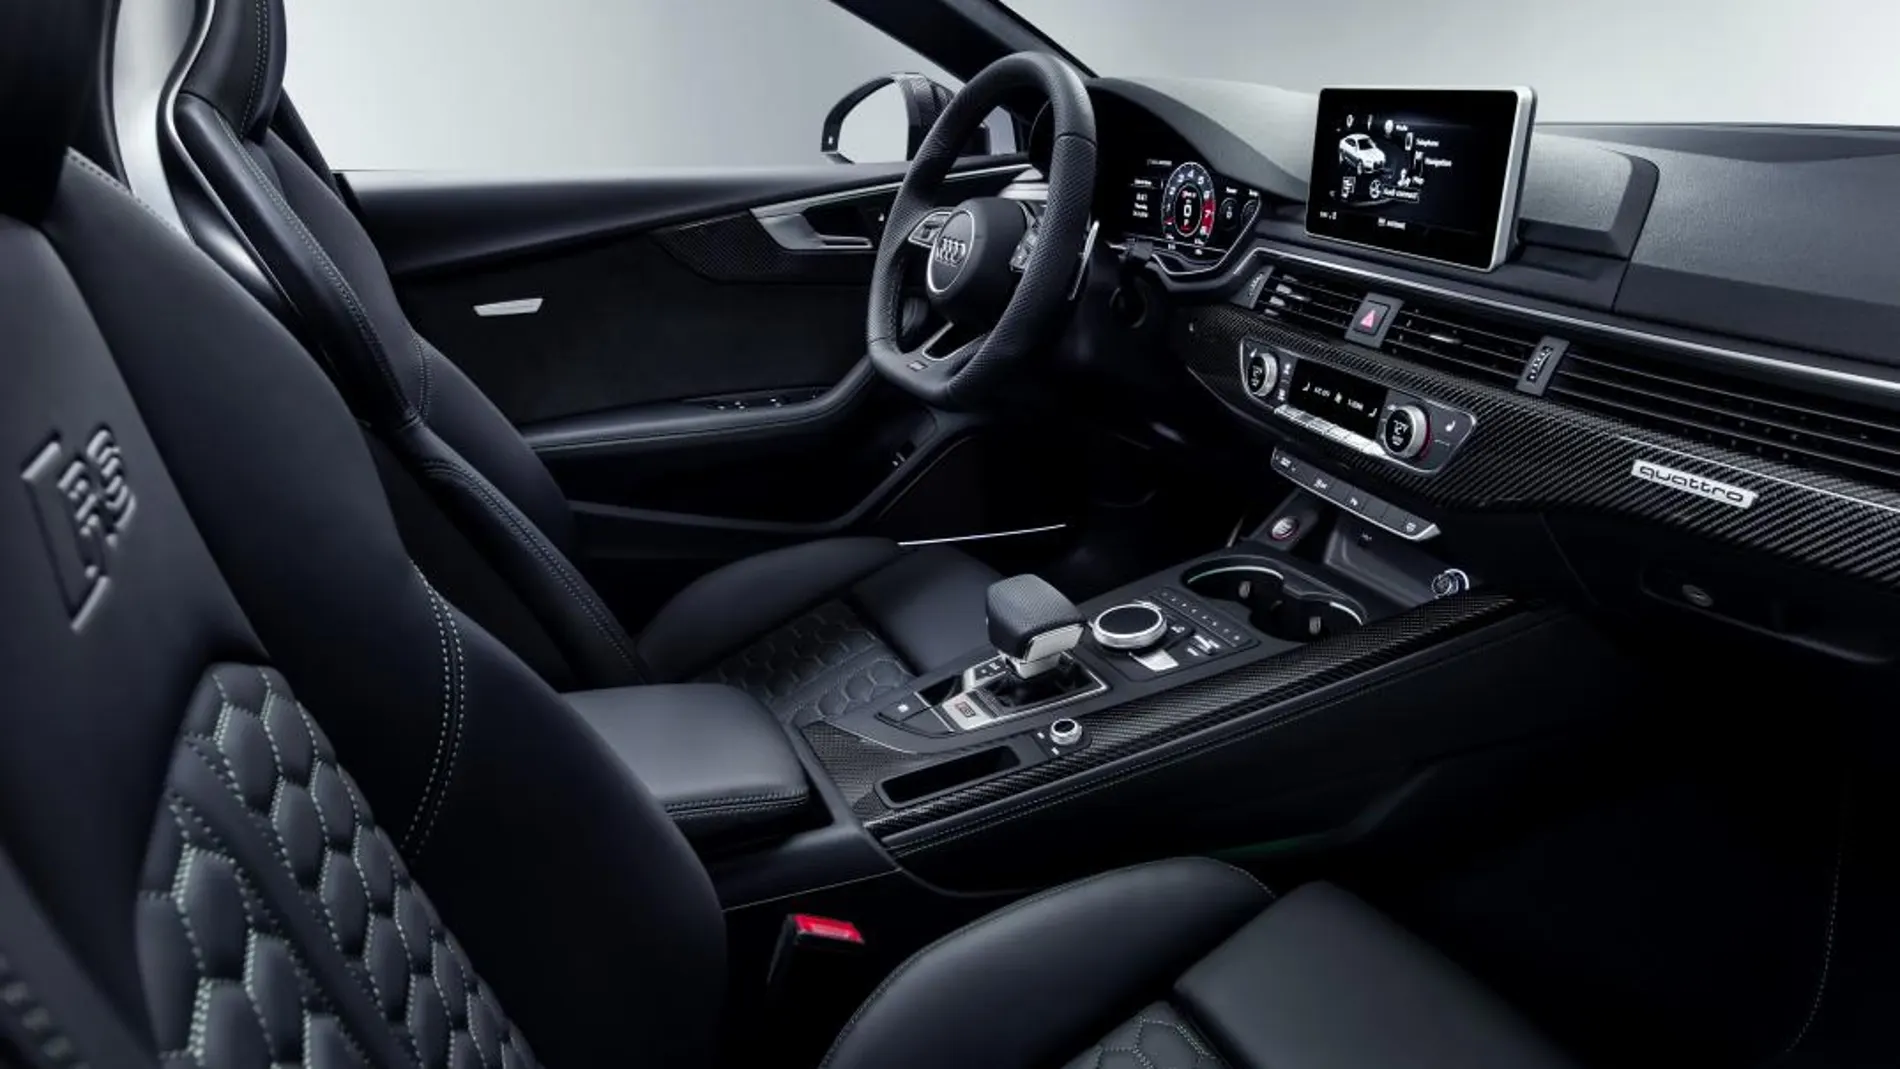 Diseño elegante y altas prestaciones: el nuevo Audi RS 5 Sportback